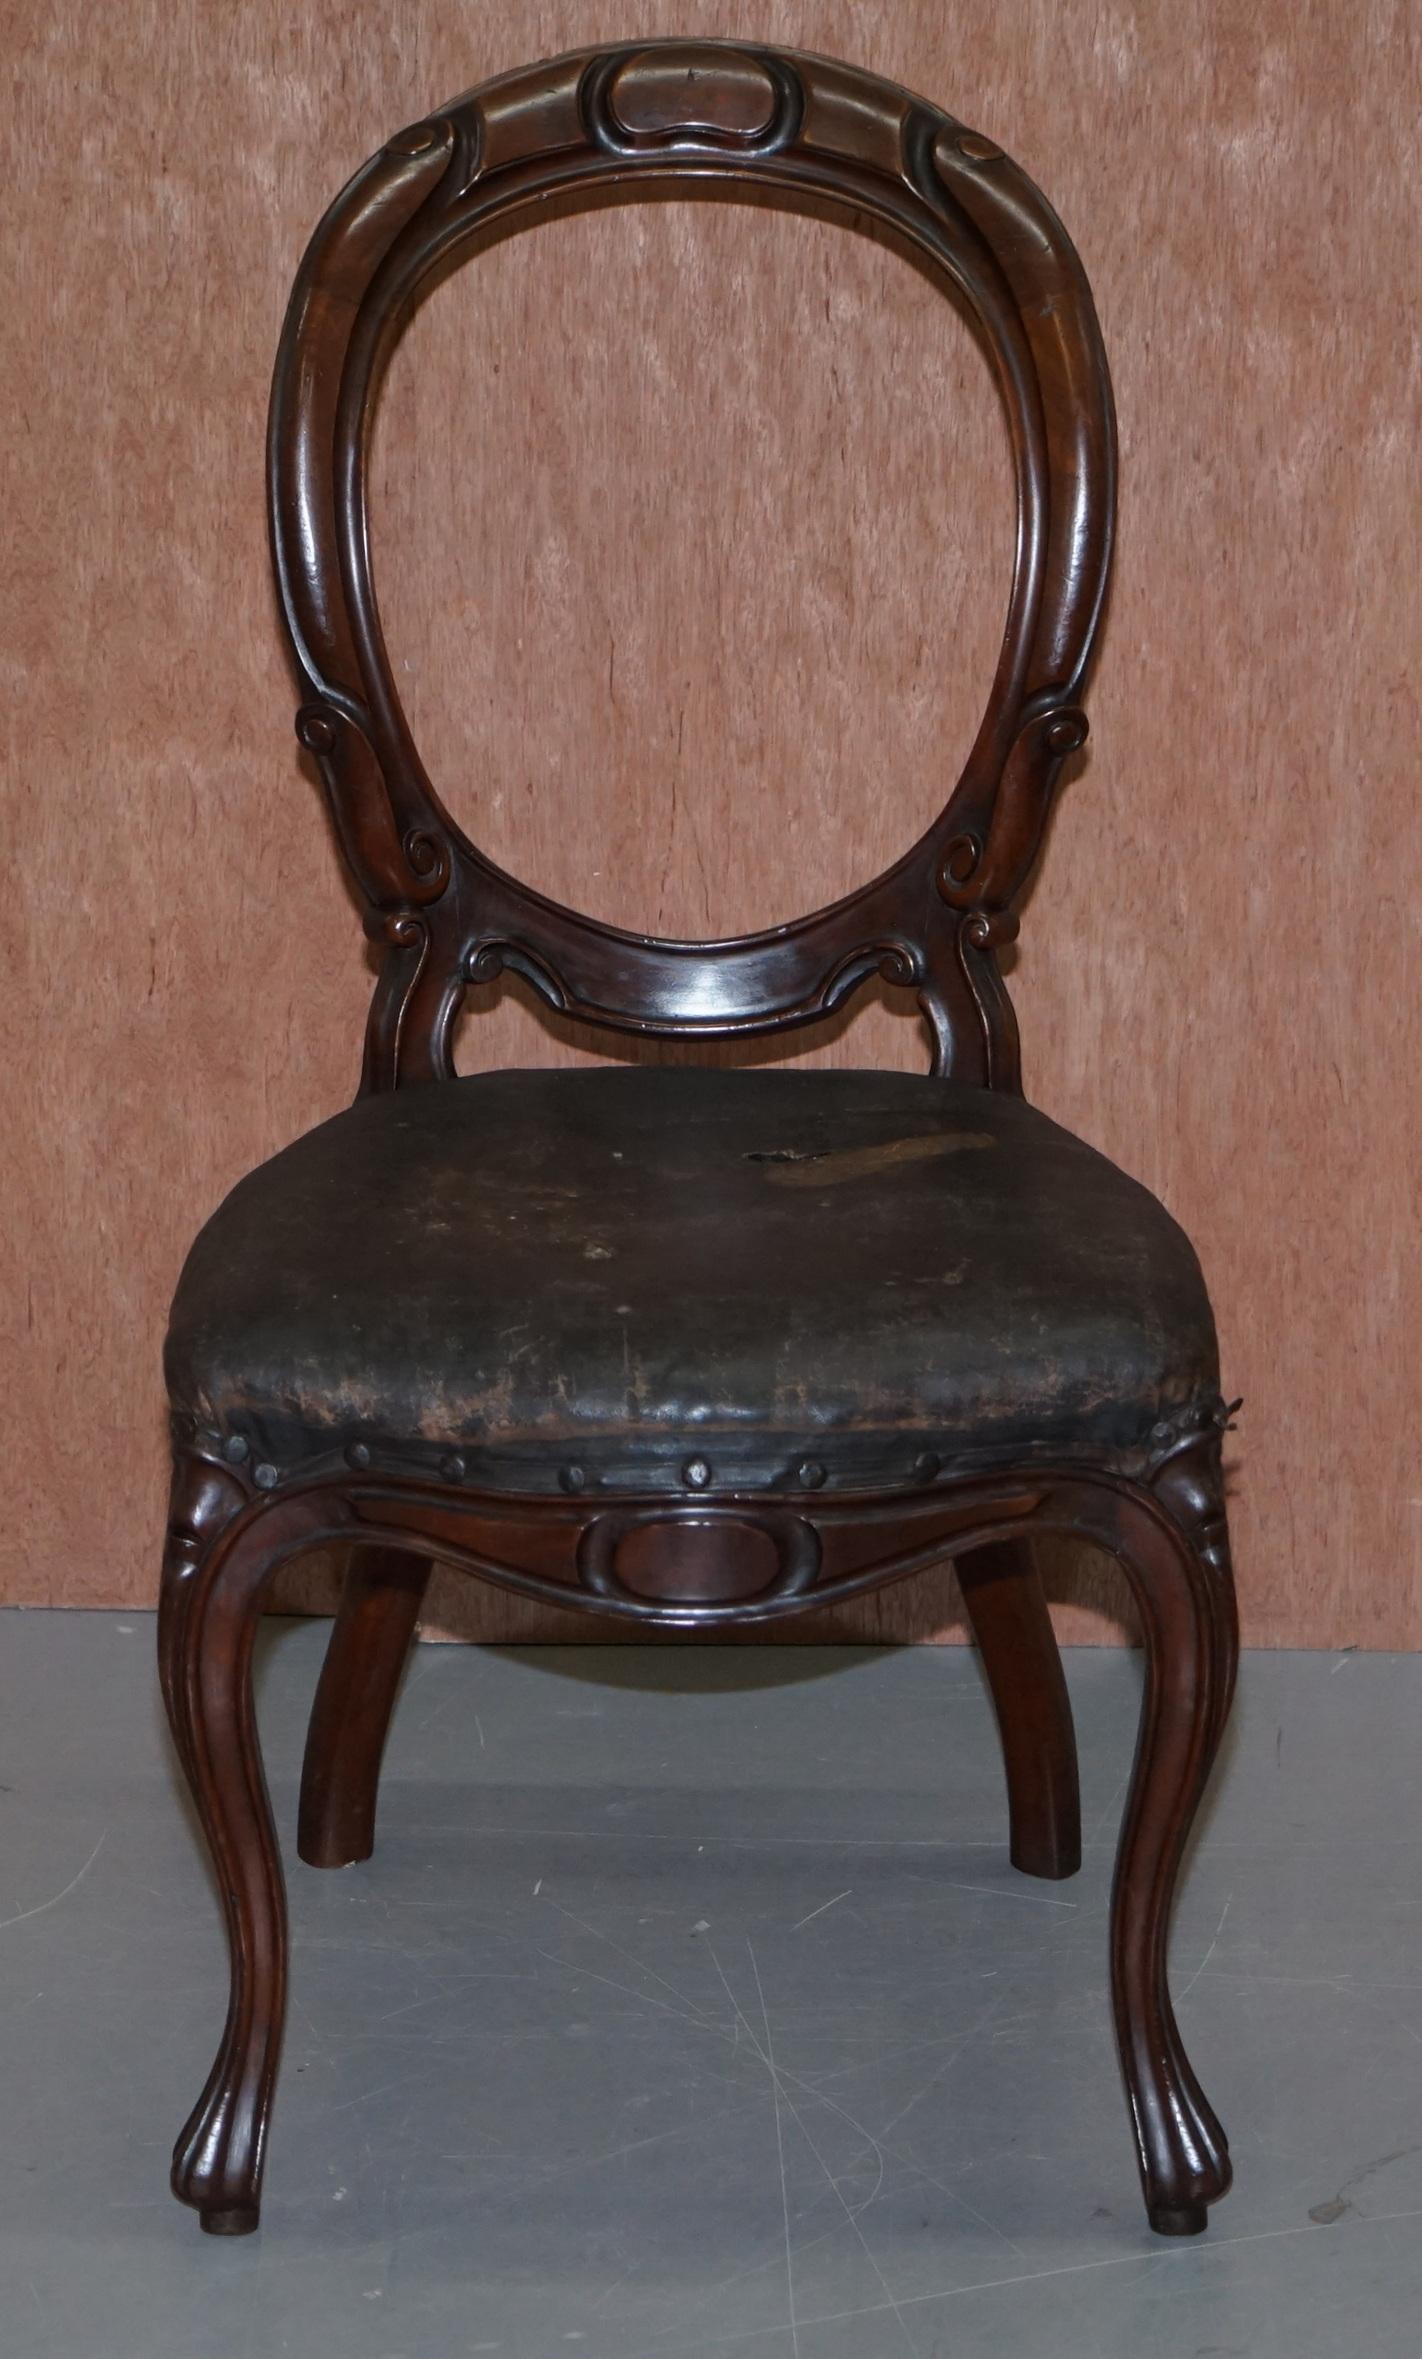 Nous sommes ravis d'offrir à la vente cette chaise de salle à manger victorienne à dossier en cuillère ou en médaillon, faite à la main, avec sa tapisserie d'origine.

Une belle chaise bien faite et décorative. Le cadre est sublime, sculpté de